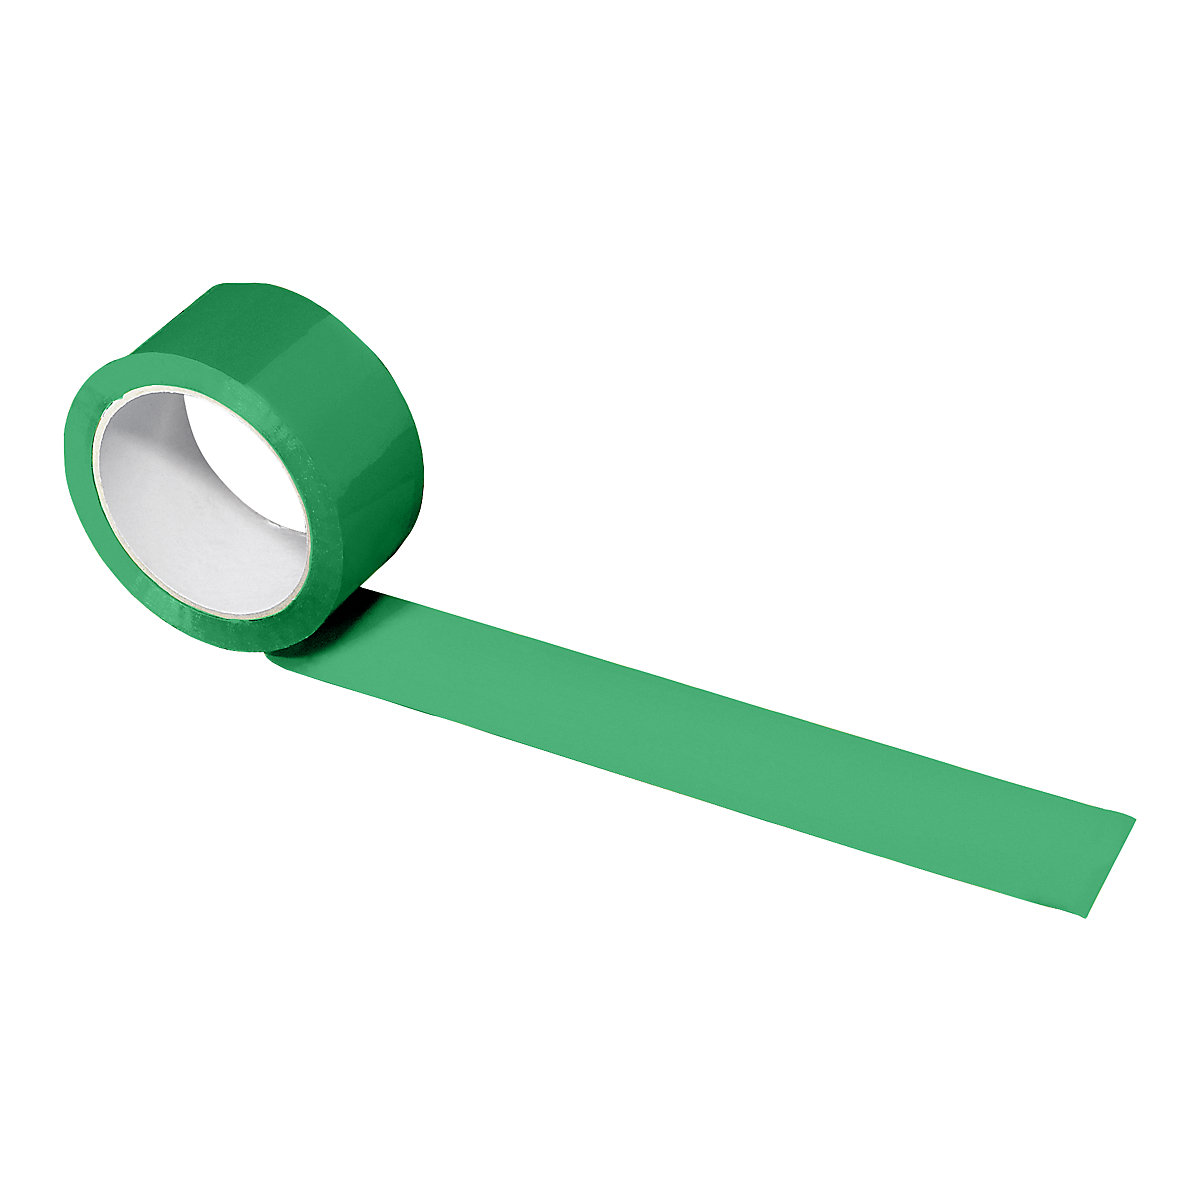 PP-Packband, in verschiedenen Farben, VE 216 Rollen, grün, Bandbreite 50 mm-4